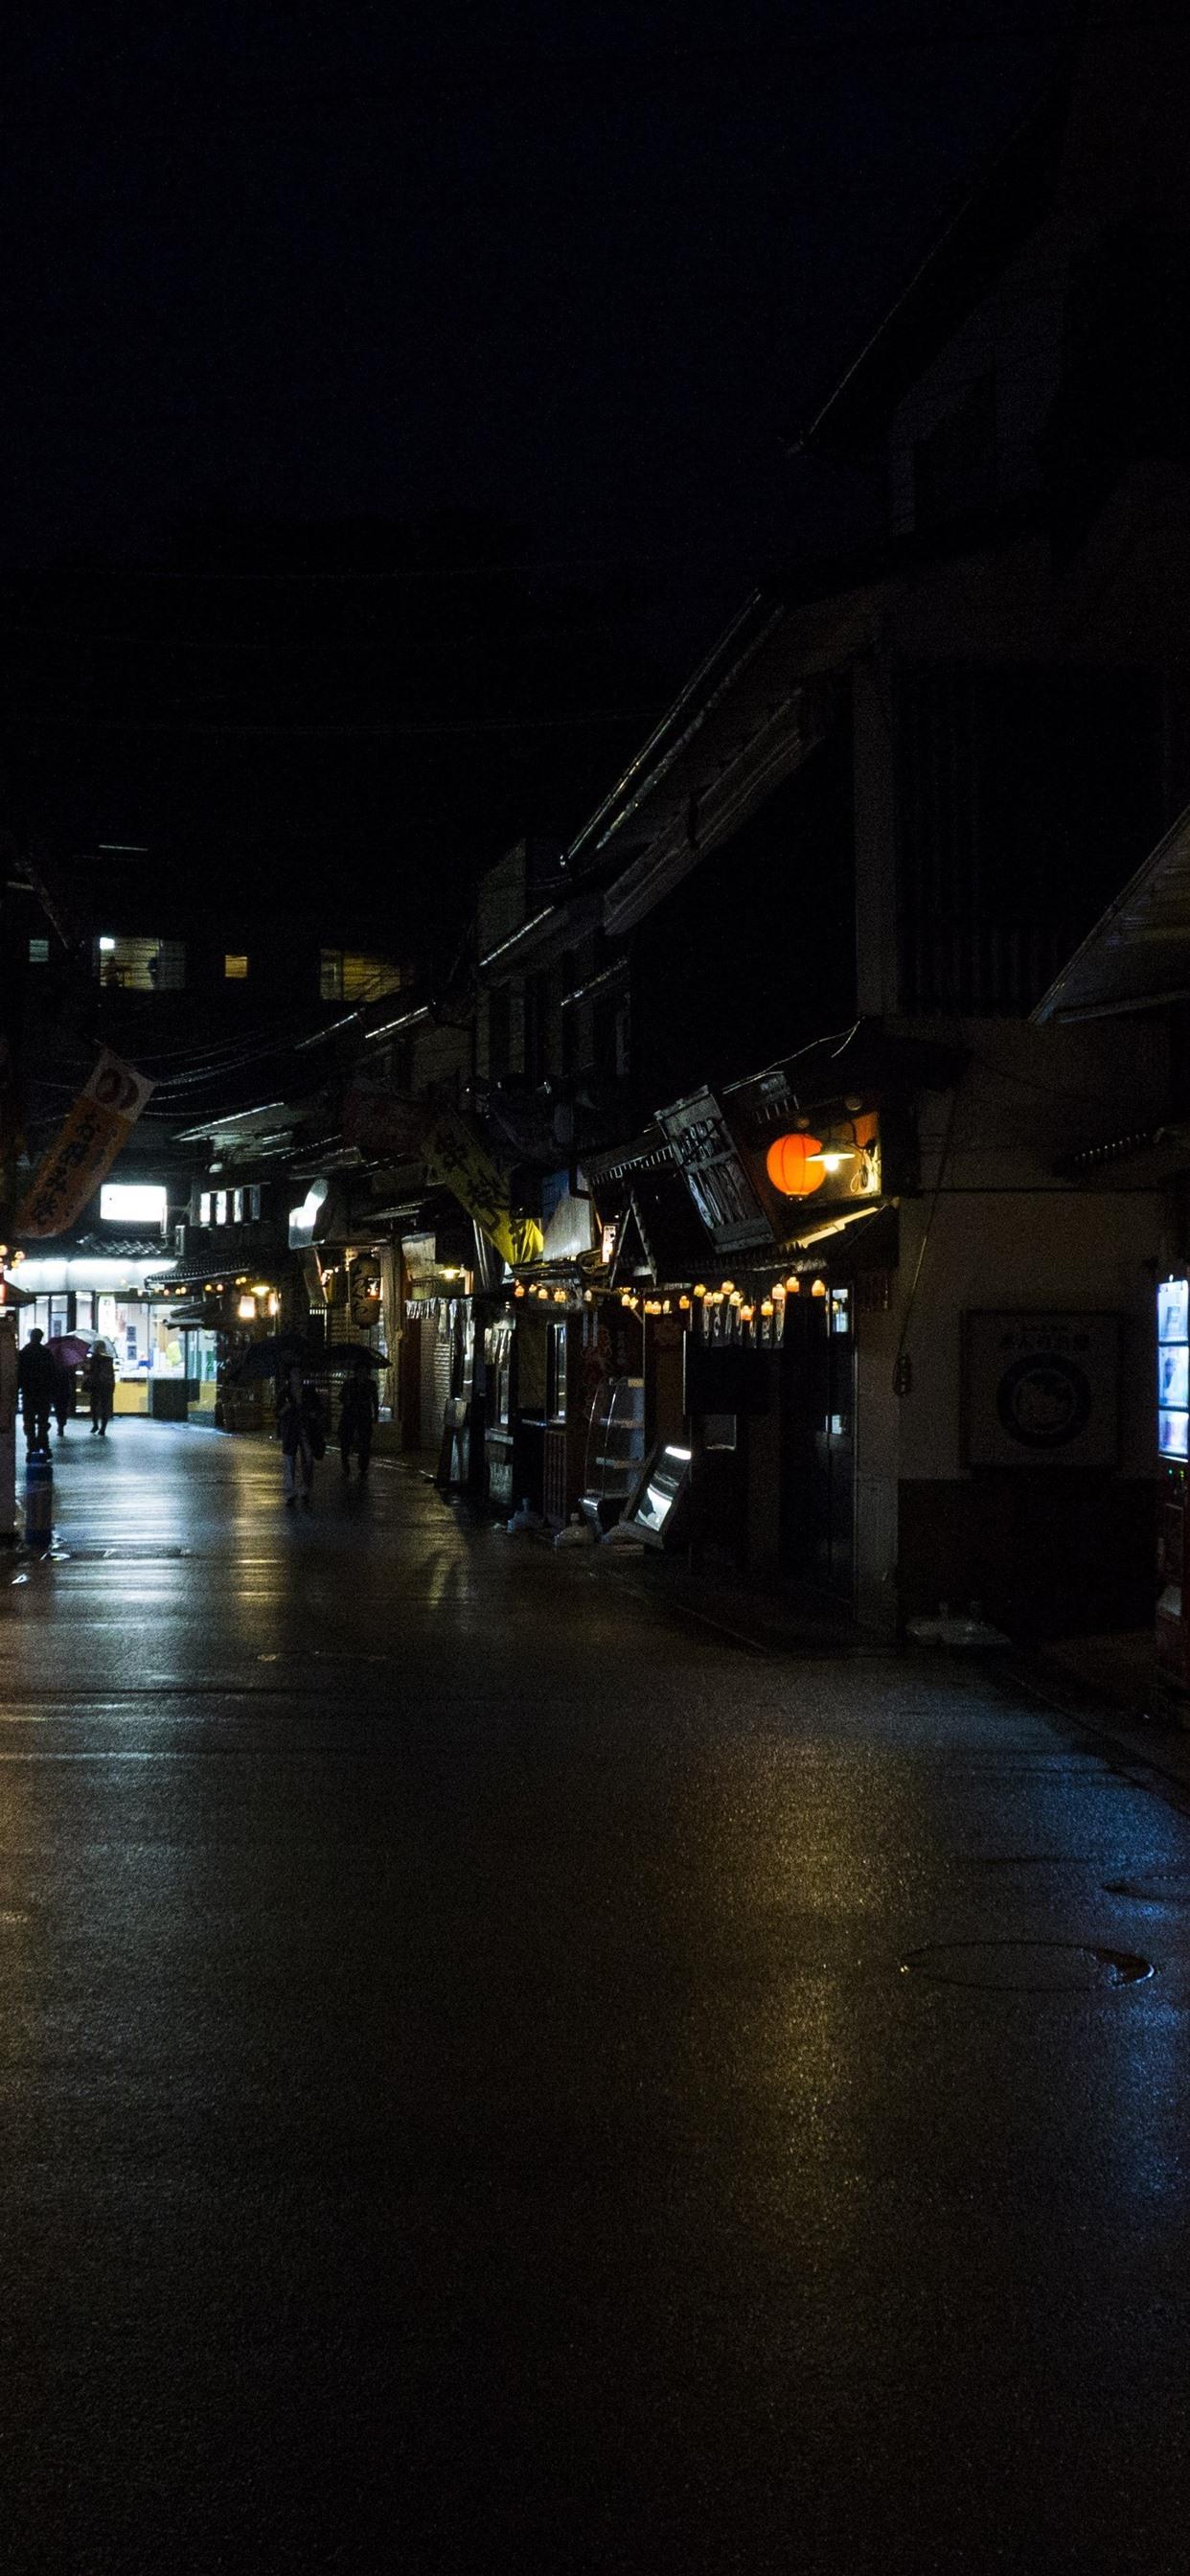 Wallpaper Itsukushima, Japan, city night, street, lanterns 5120x2880 UHD 5K Picture, Image